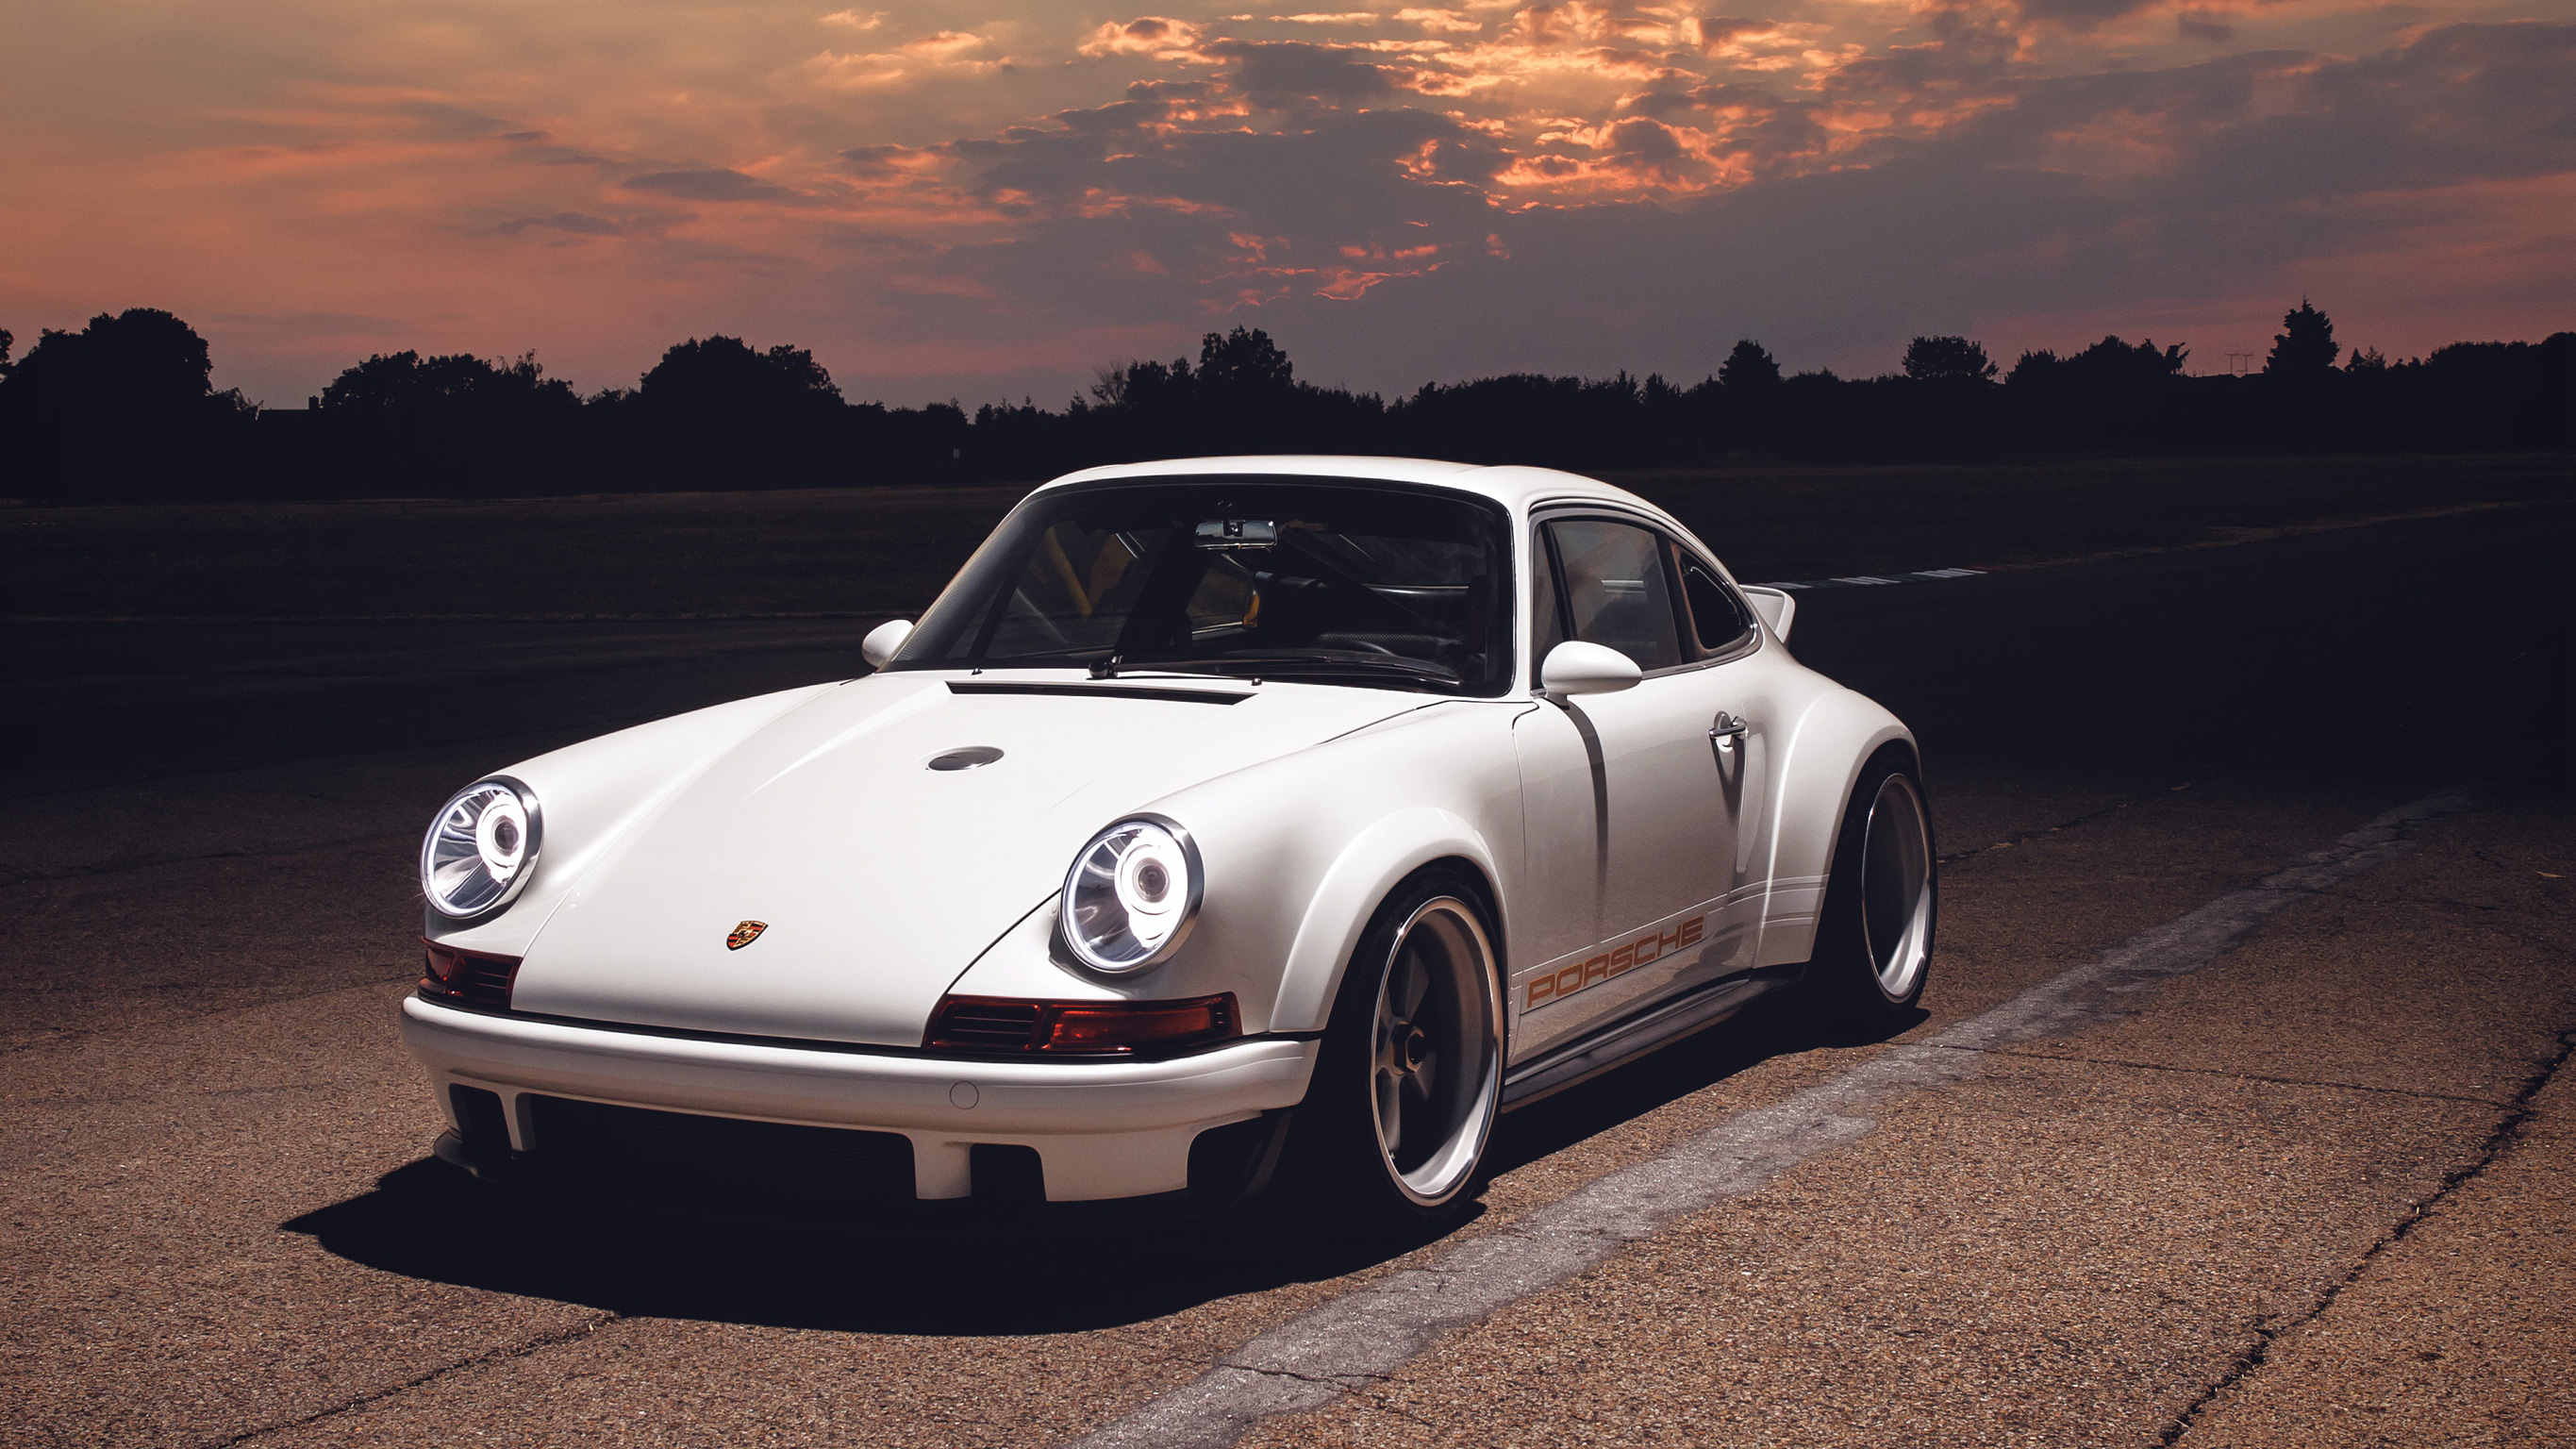 Porsche 911 Singer , HD Wallpaper & Backgrounds